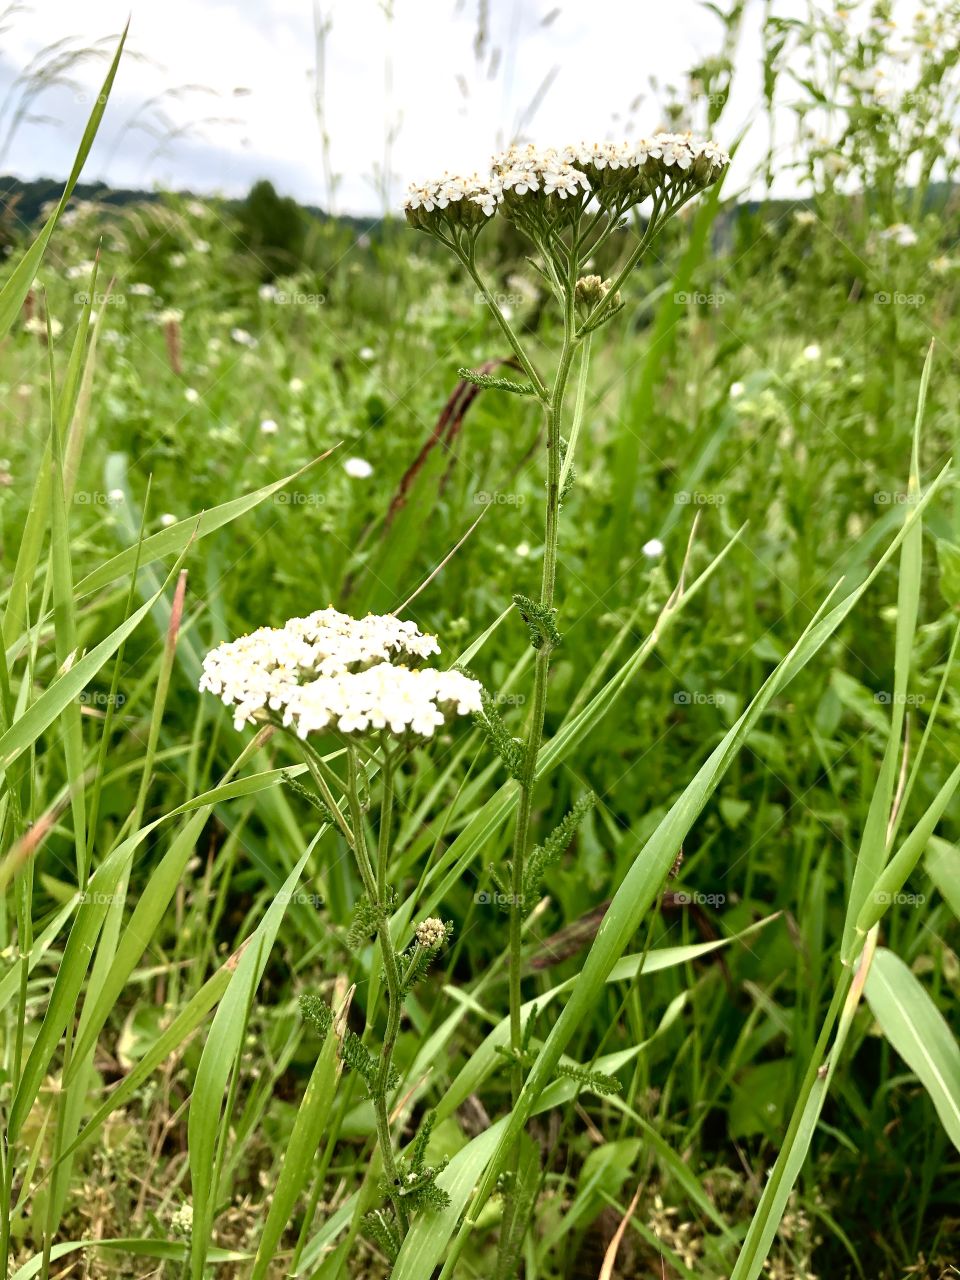 White flower in grass